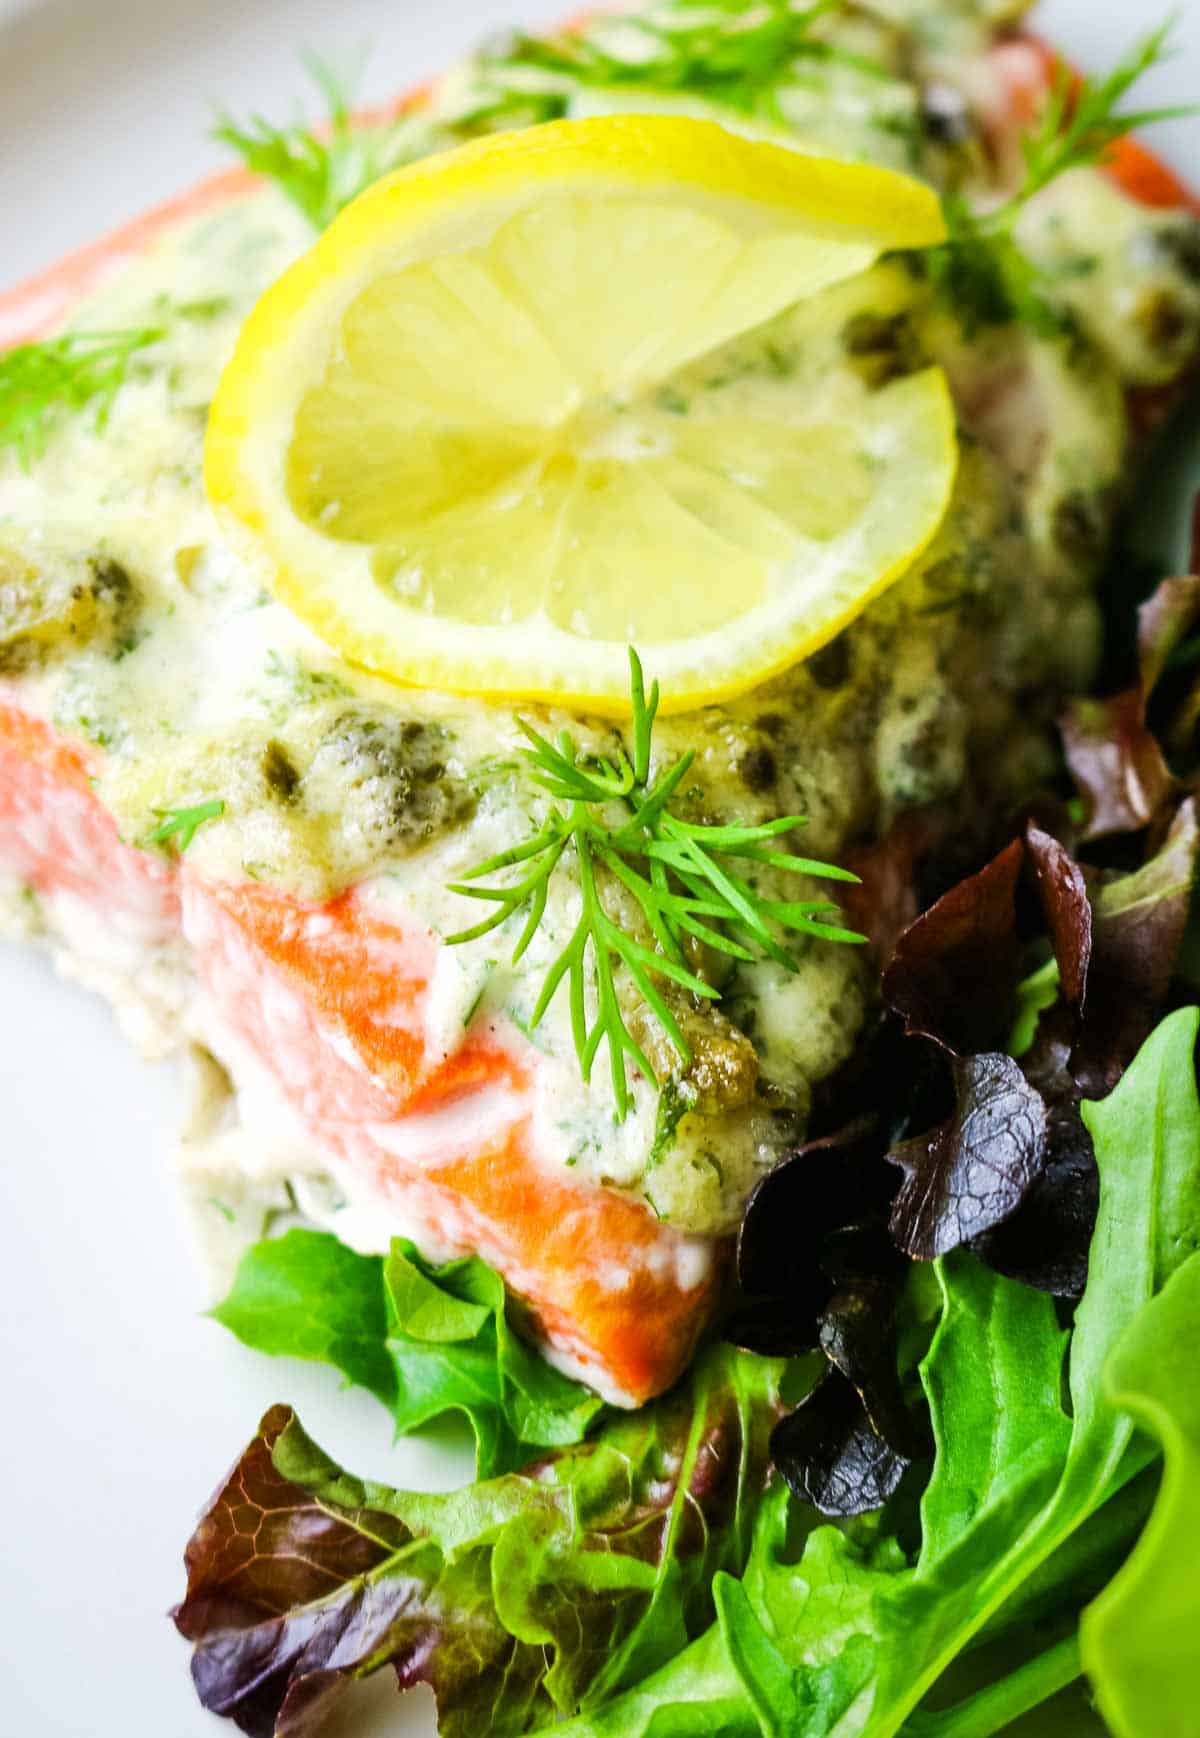 salmon with green salad and lemon slice.